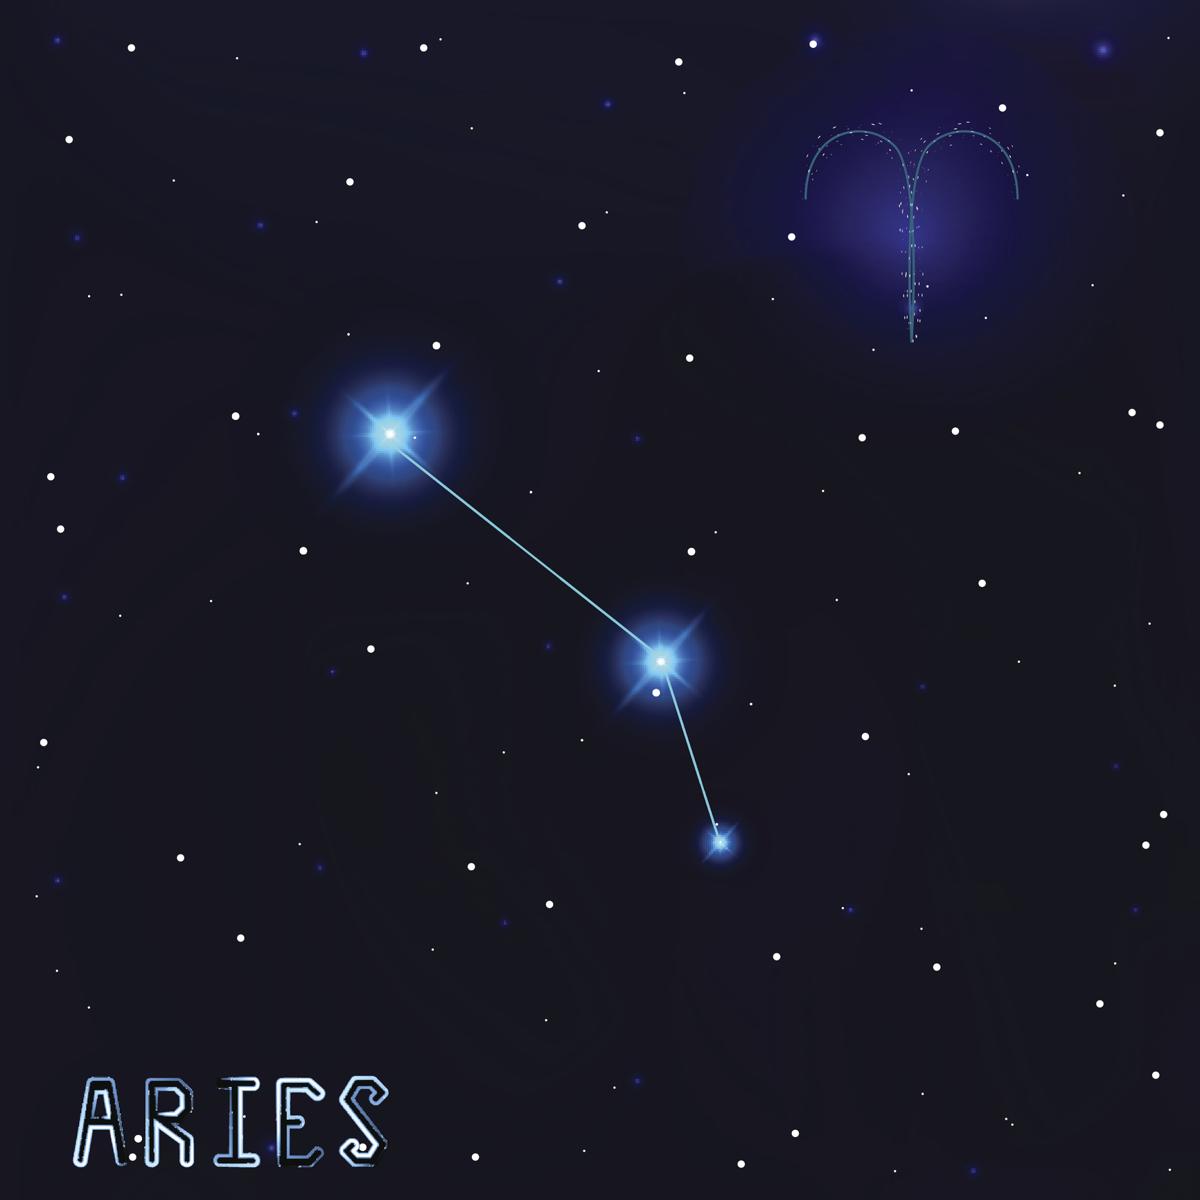 are Aries and Sagittarius